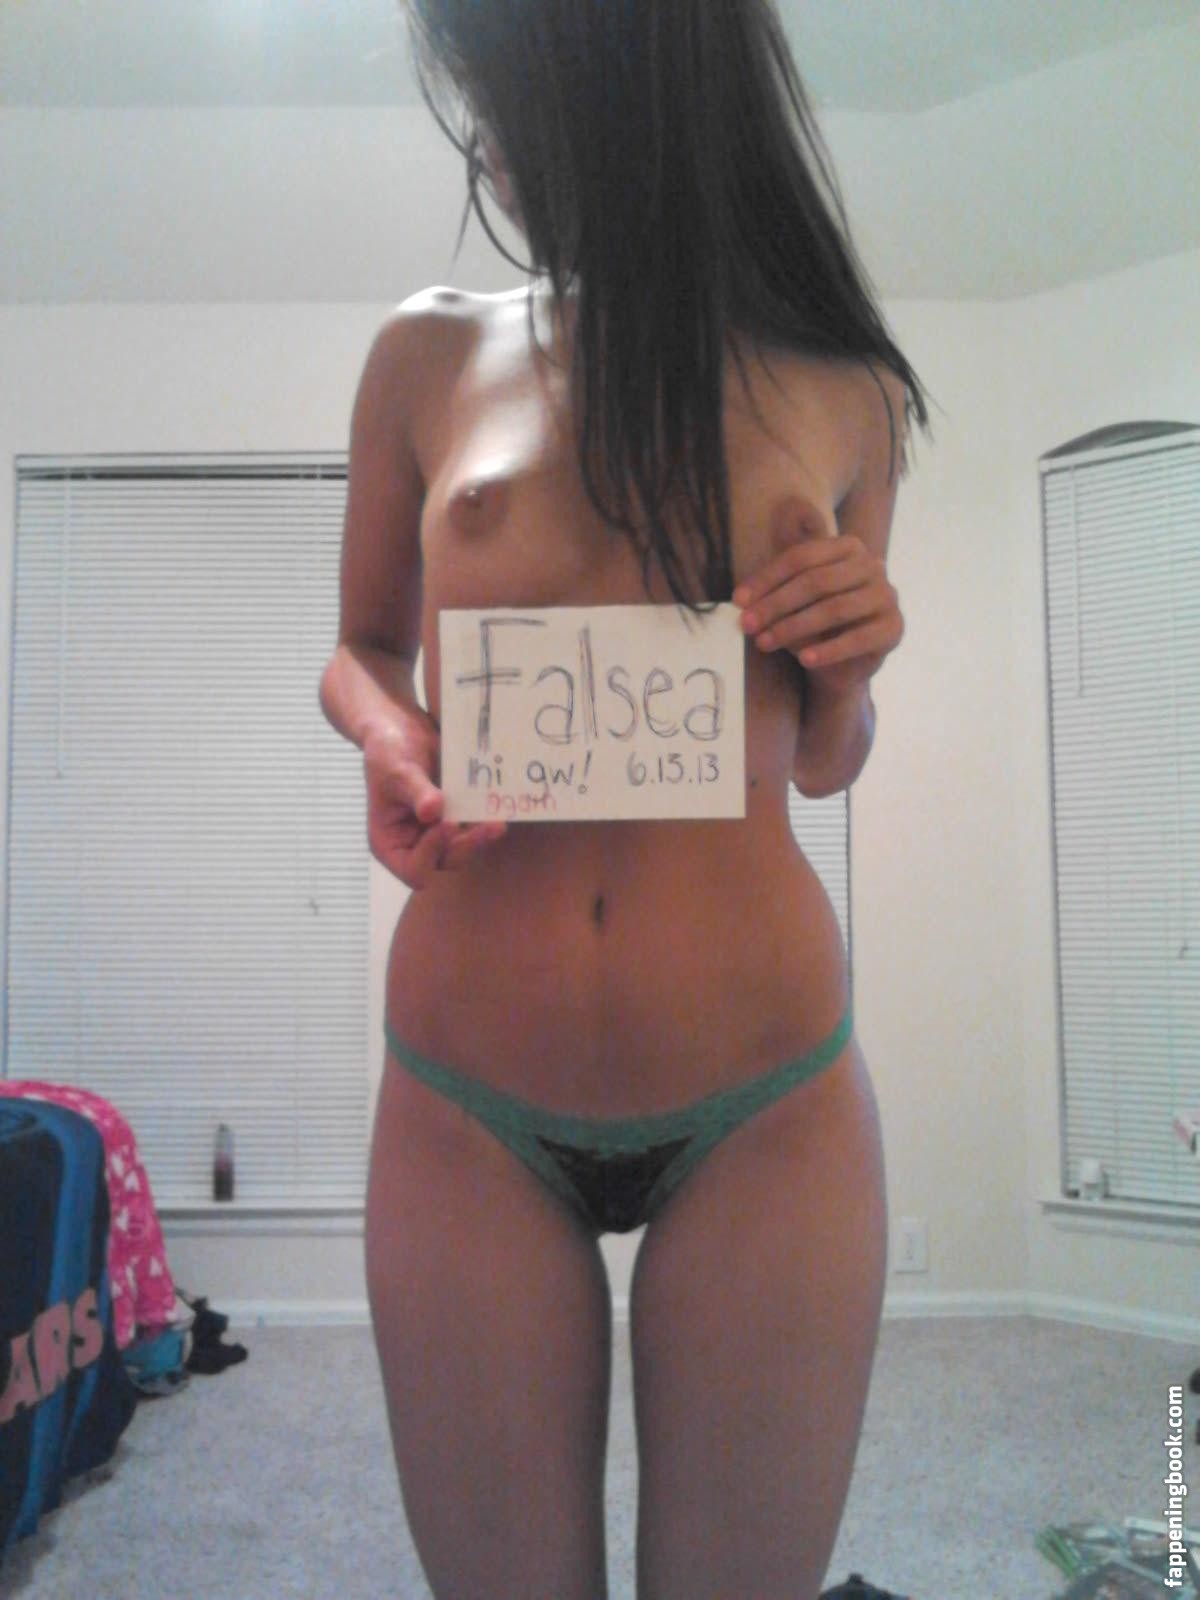 Falsea Nude